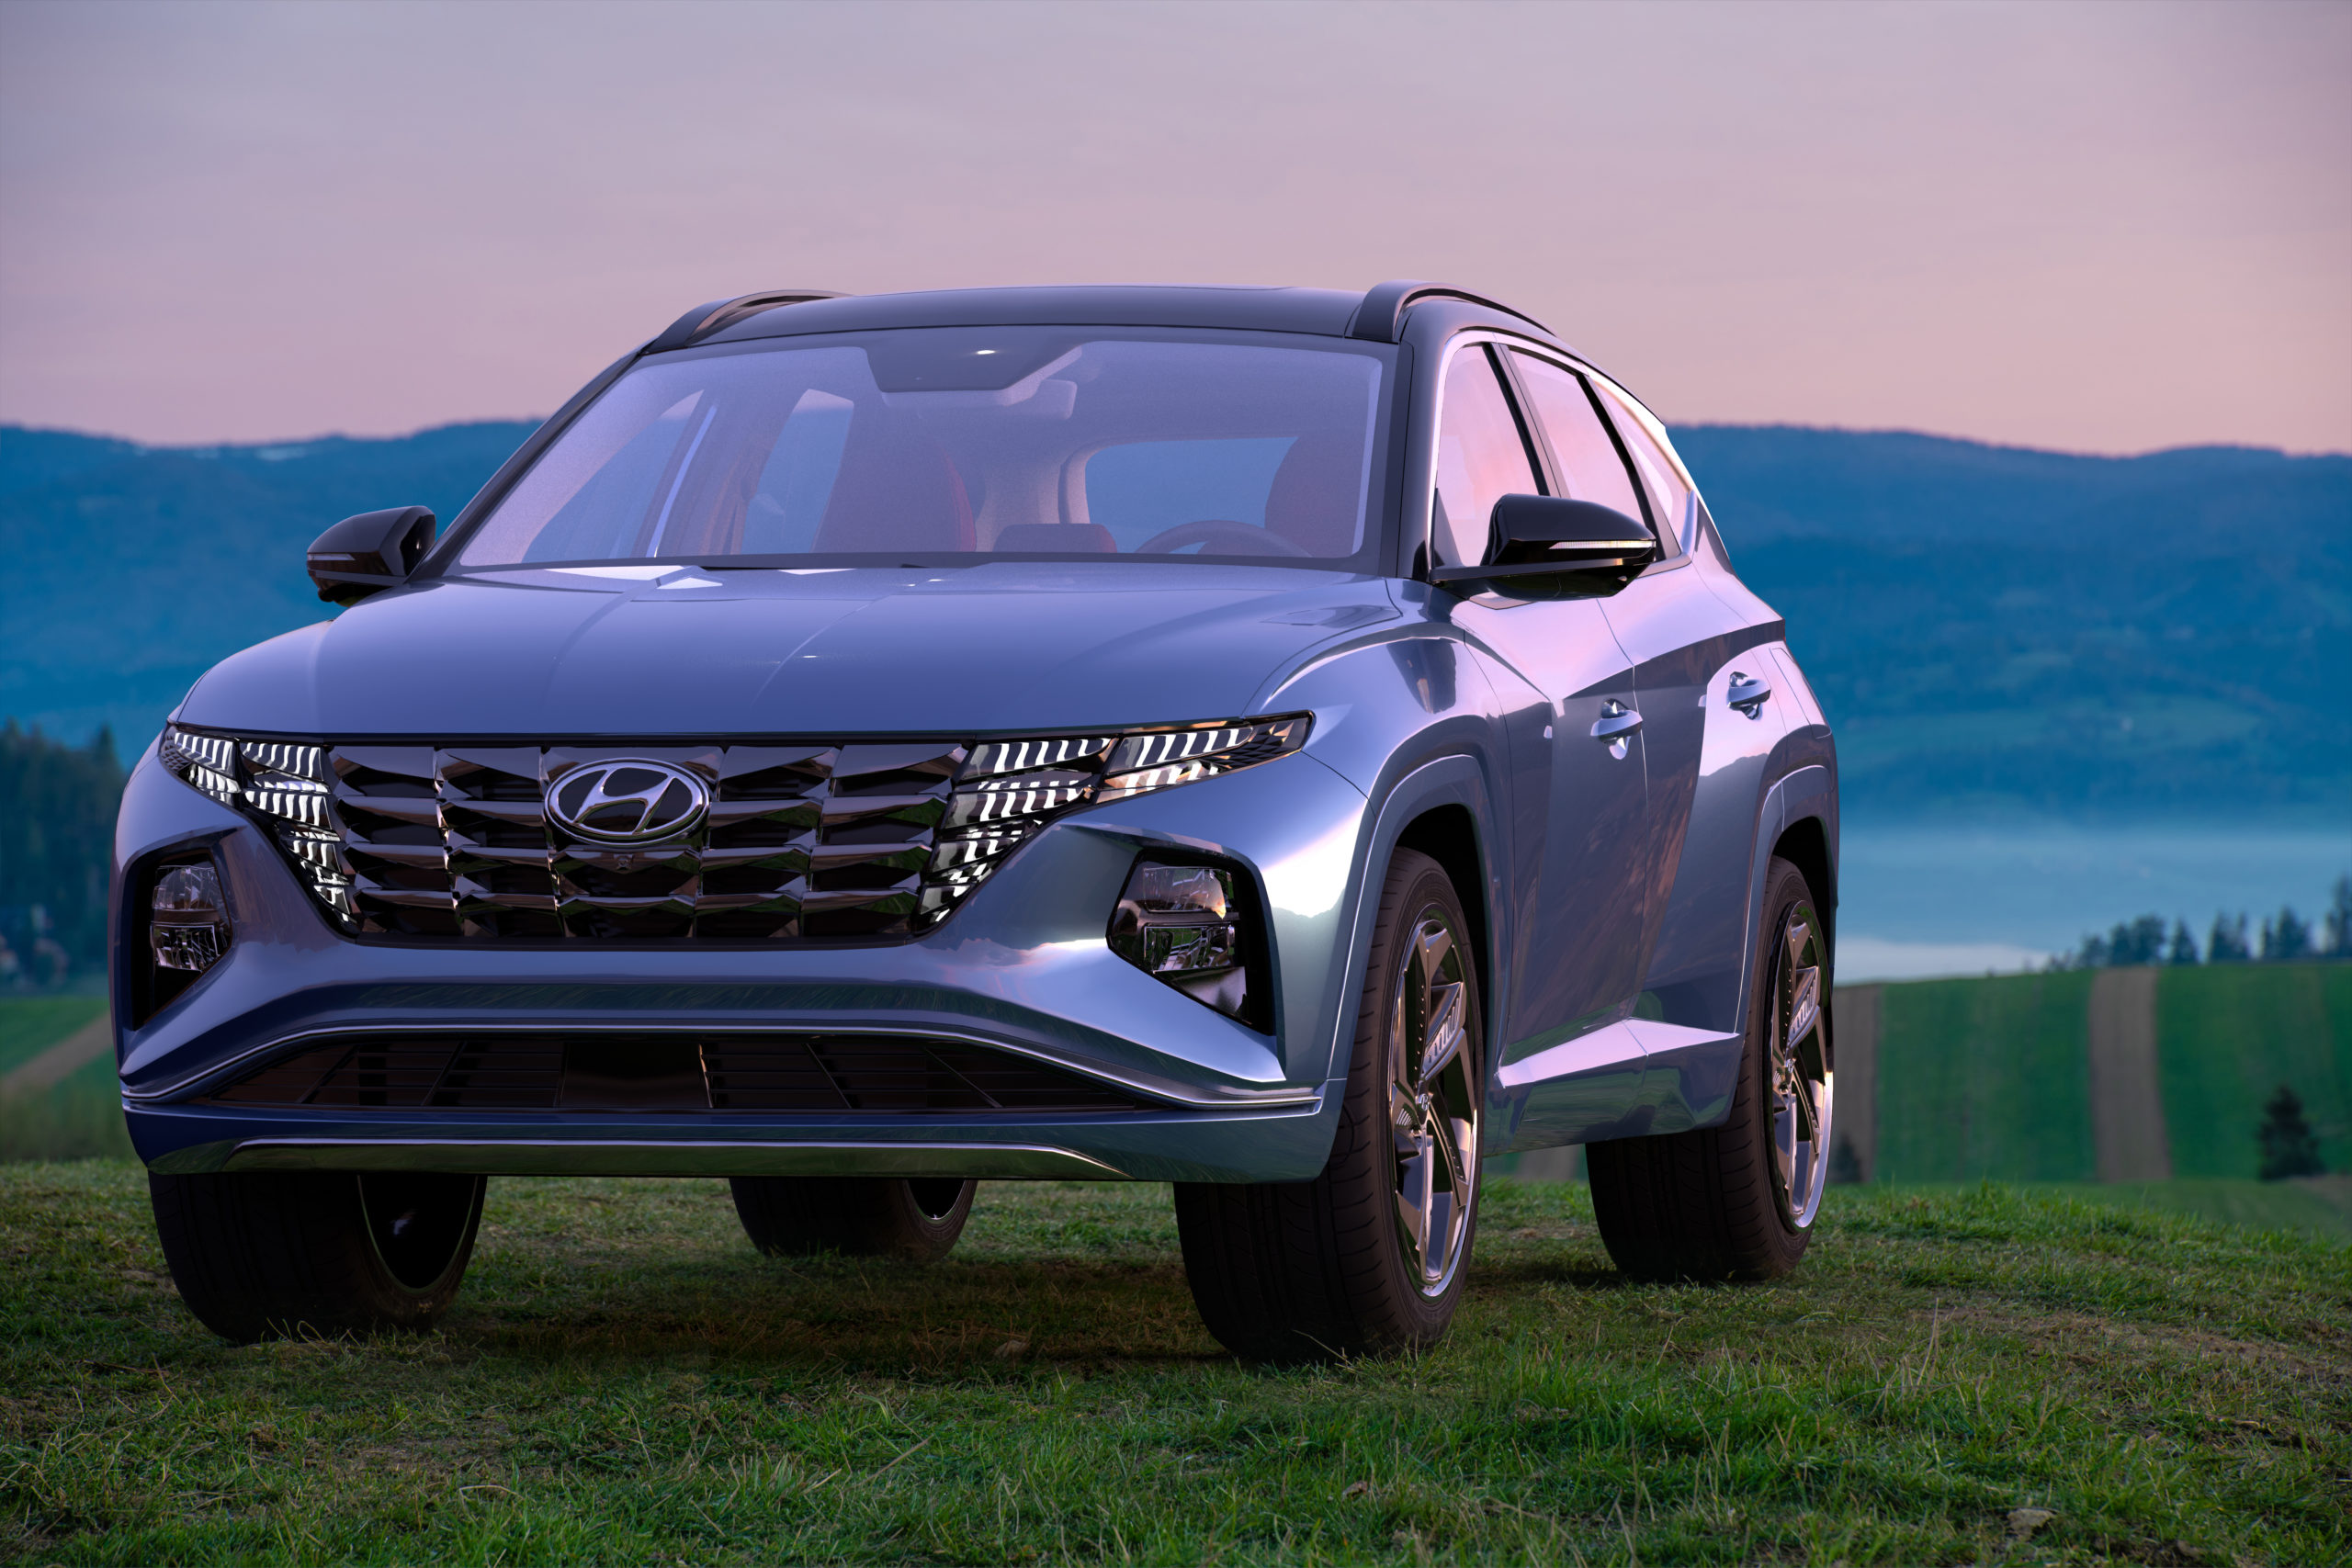 Las ventas de automóviles en España aumentaron en septiembre con Hyundai Tucson coronando el automóvil nuevo más popular